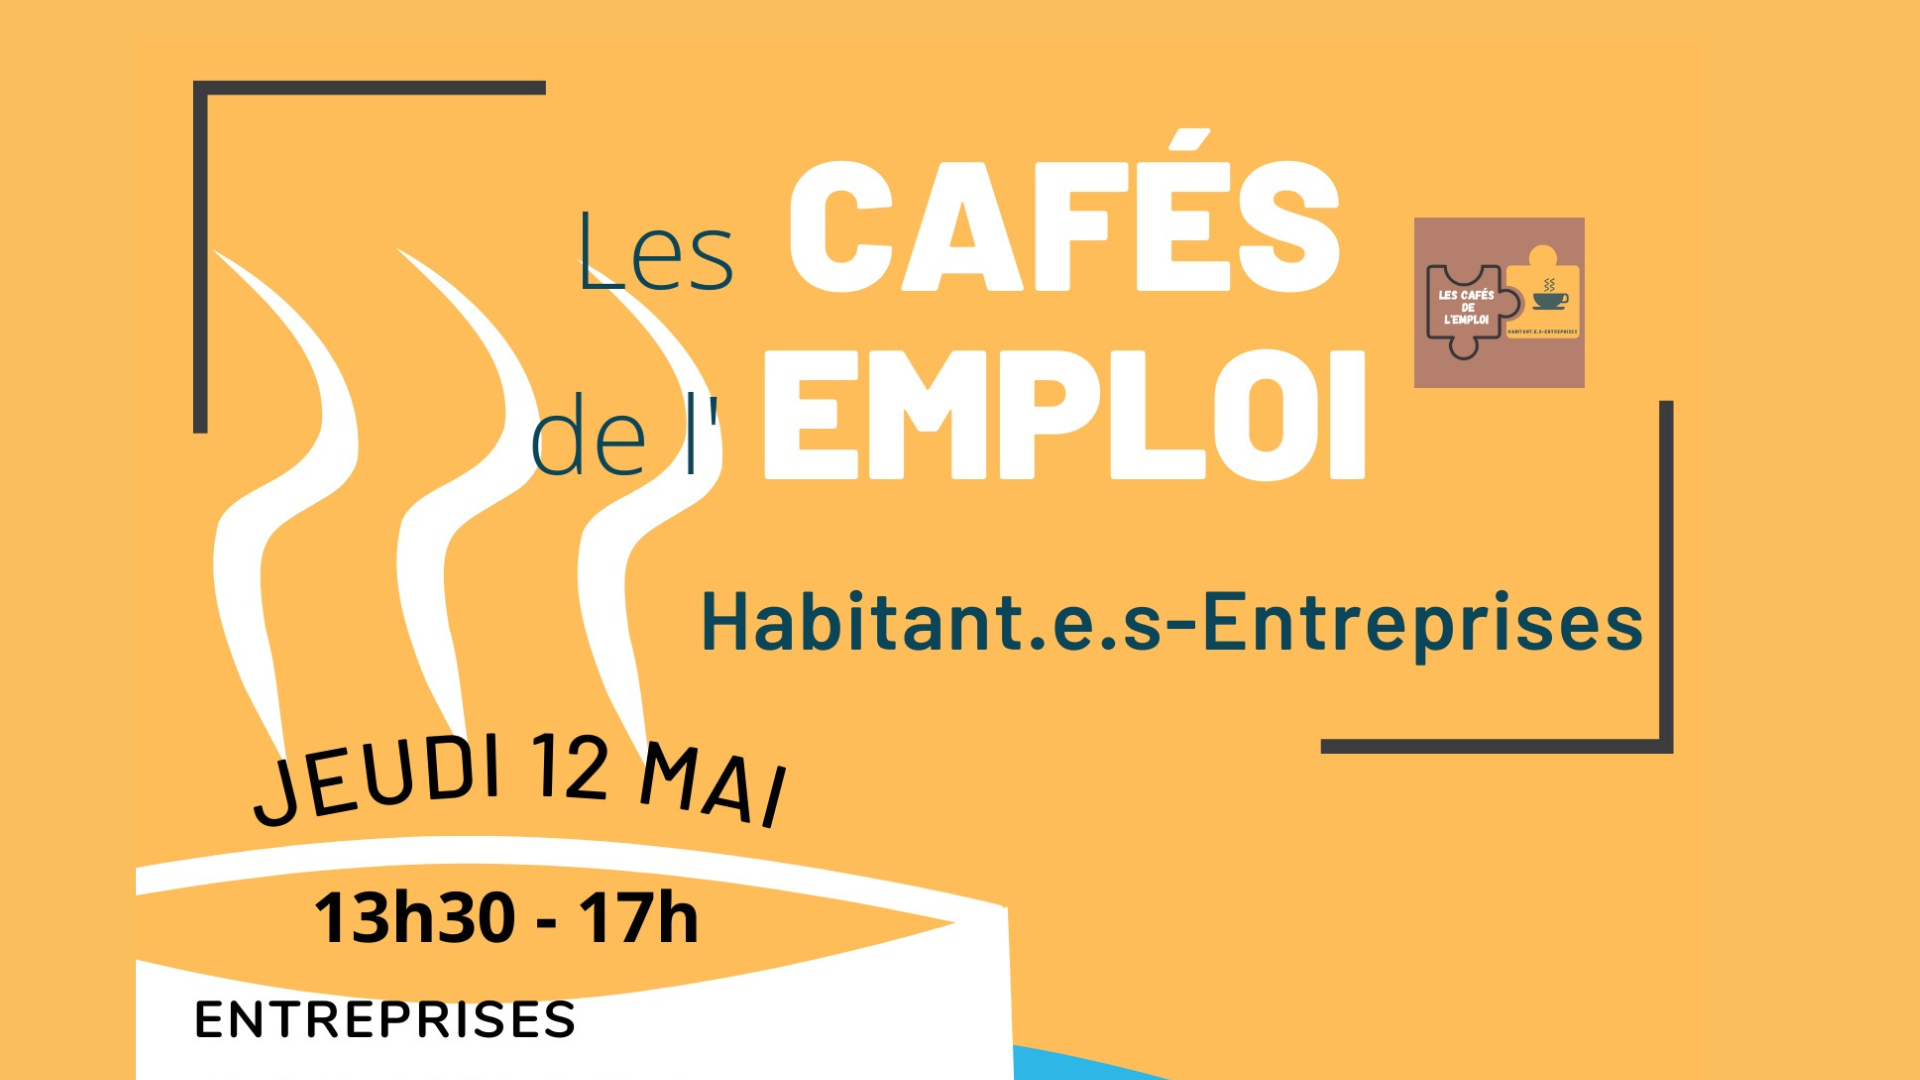 You are currently viewing Cafés de l’emploi habitant.e.s / entreprises – Jeudi 12 mai au Centre Social